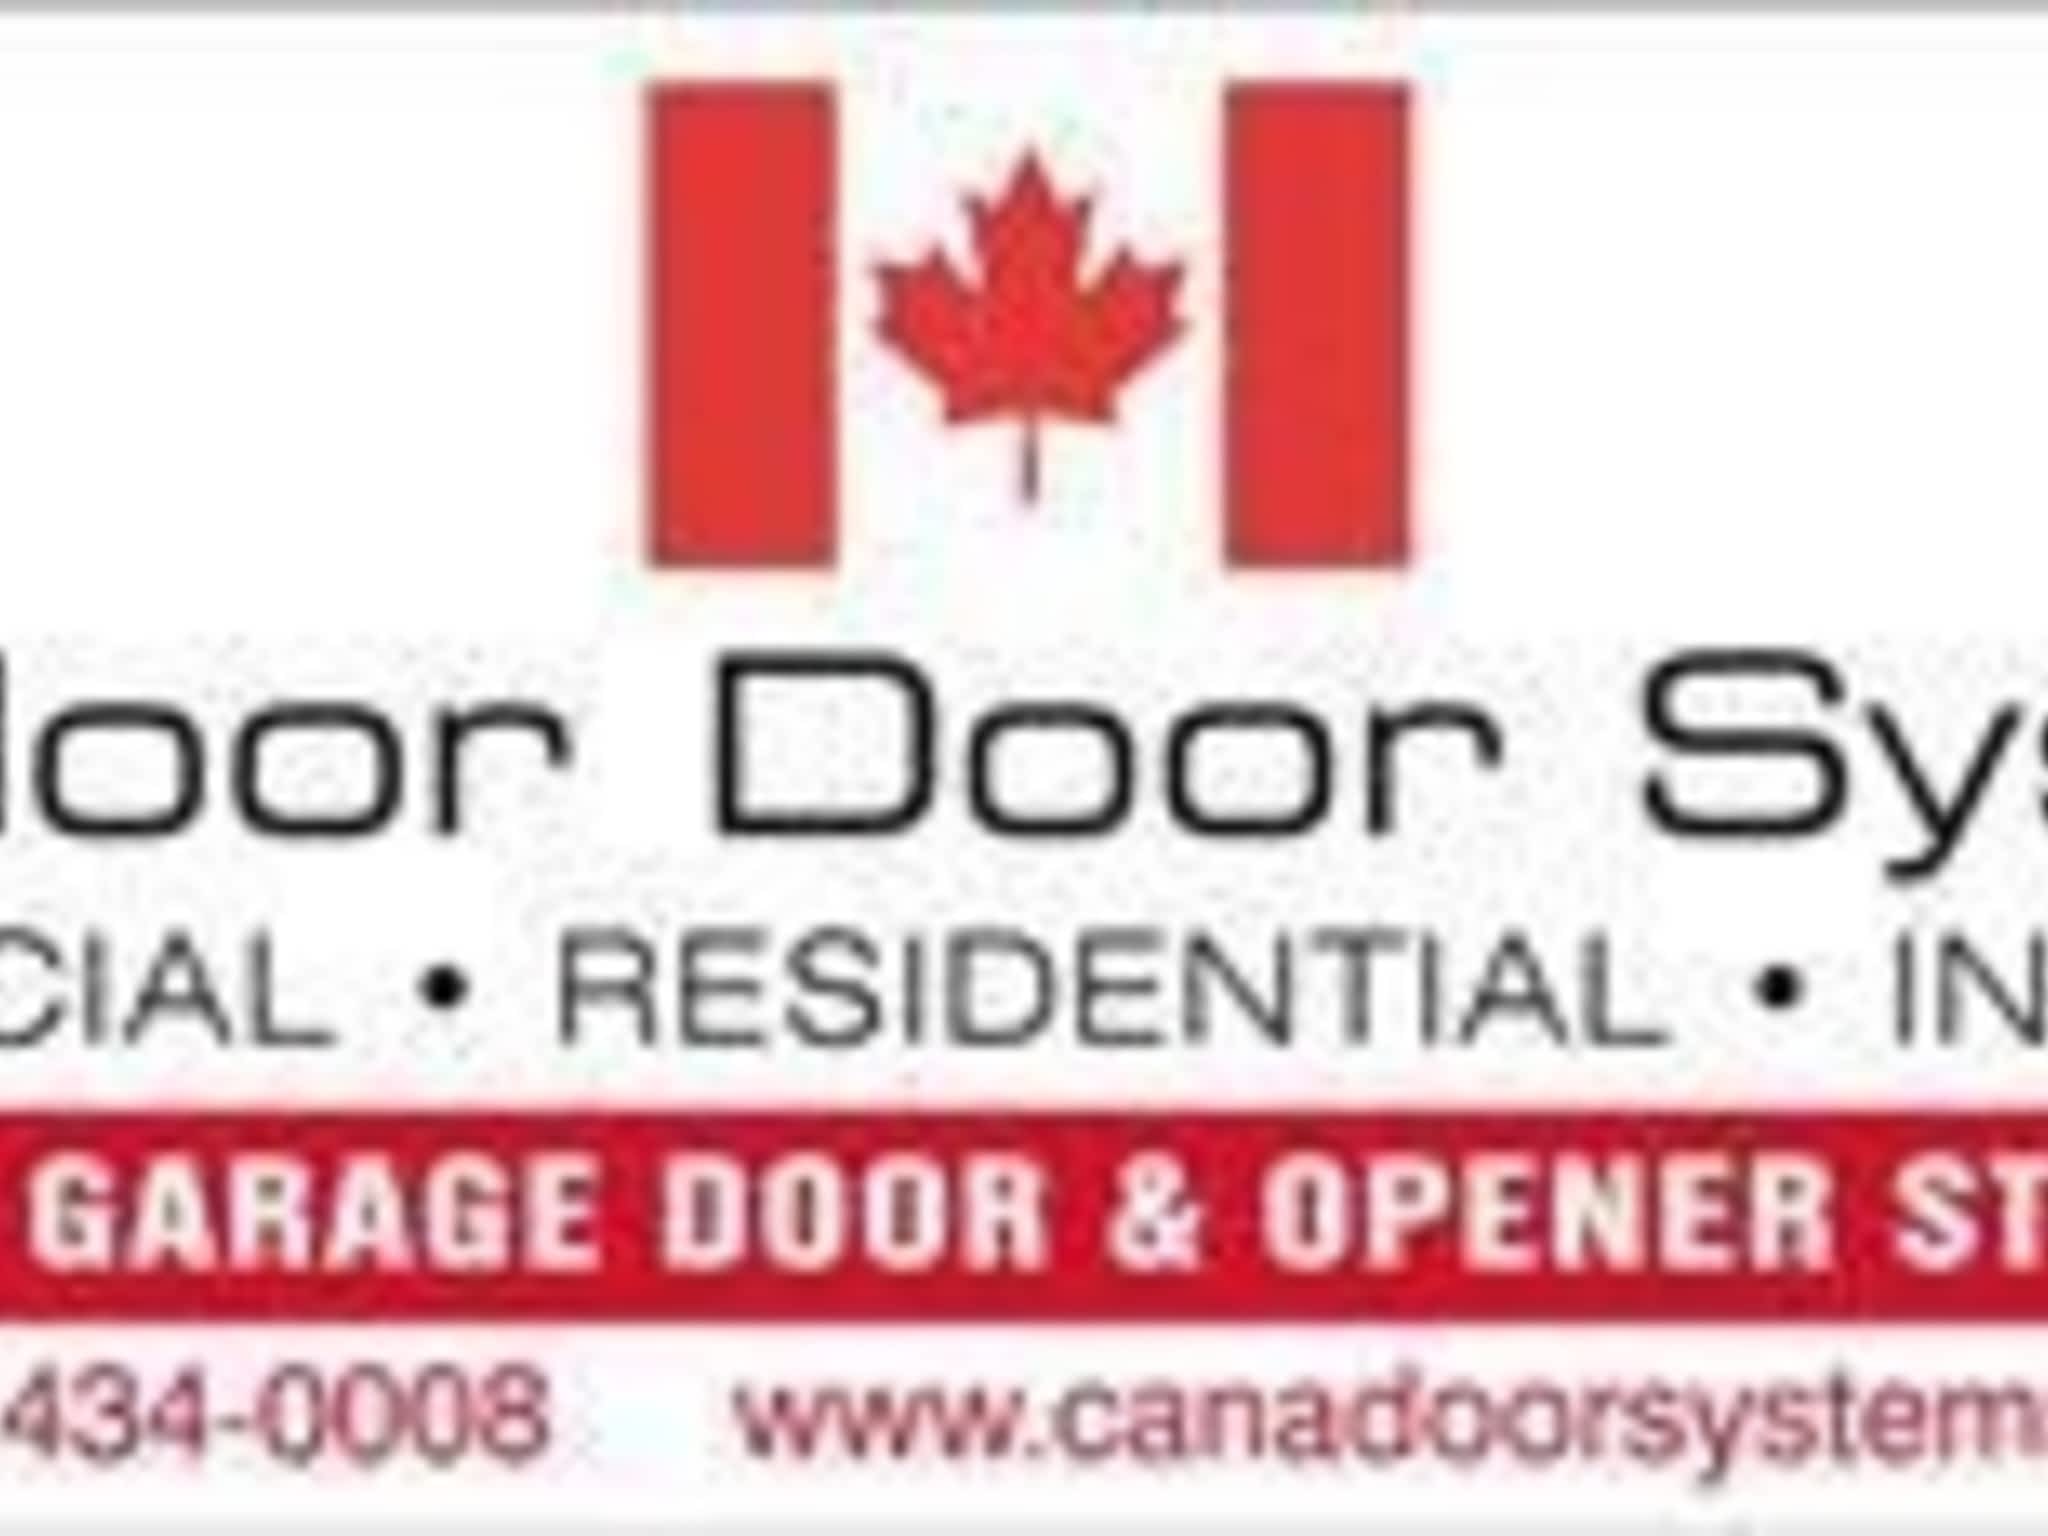 photo Canadoor Door Systems